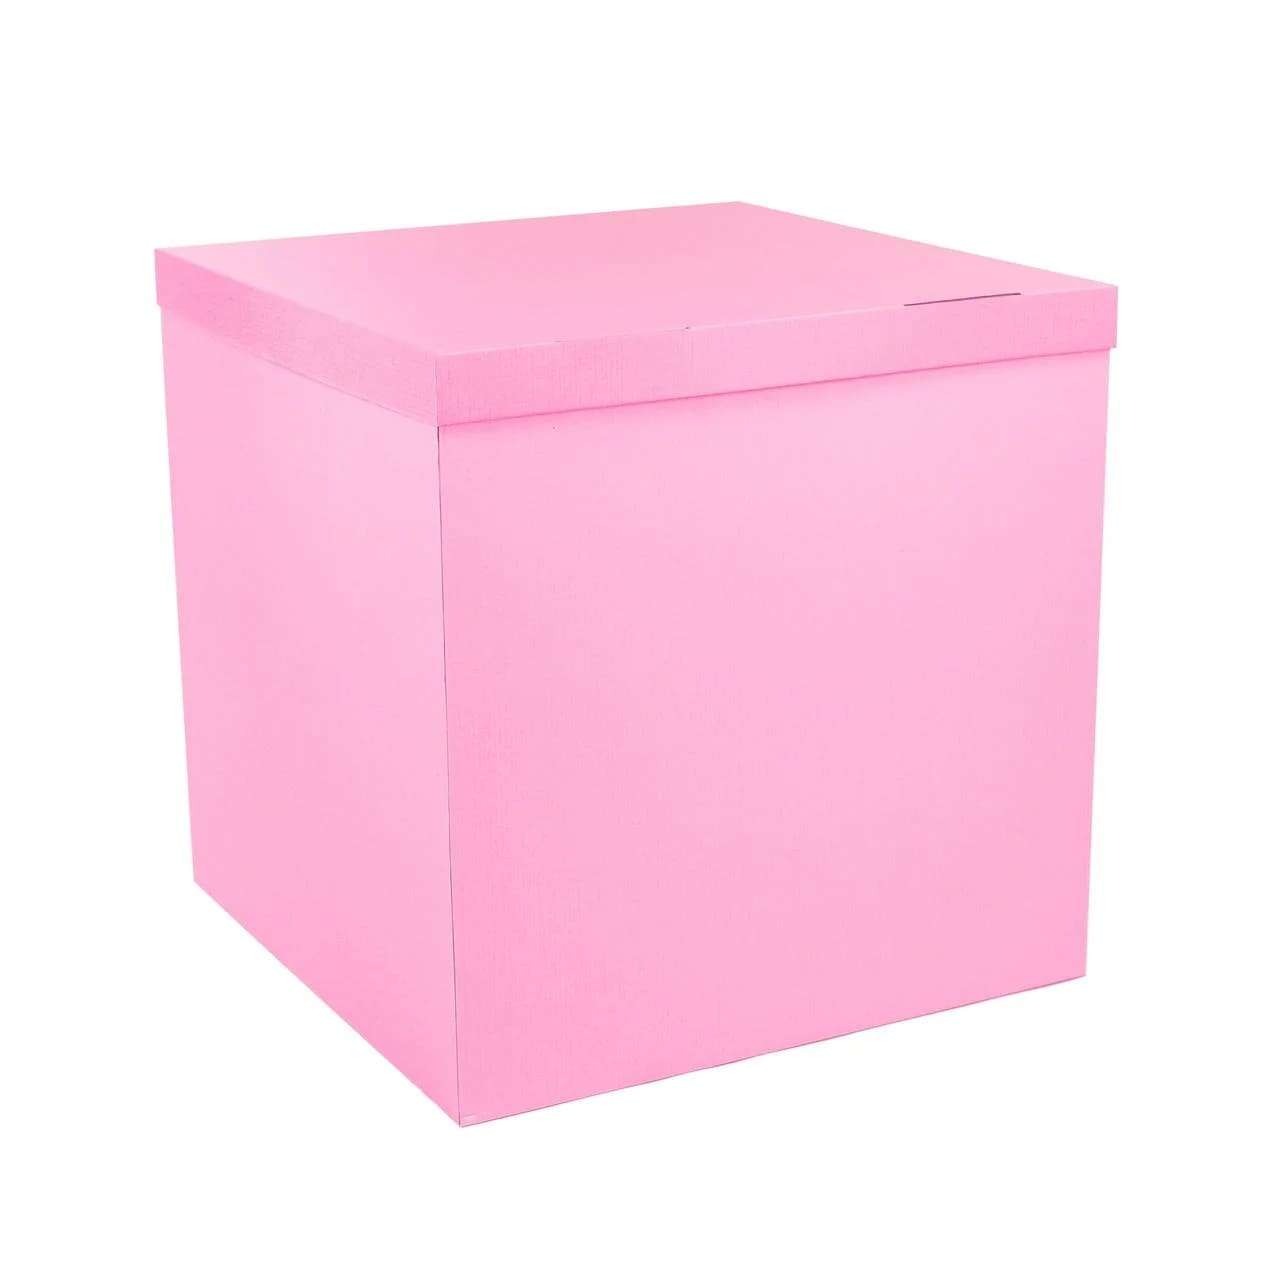 Коробка розовая 70*70*70см для воздушных шаров картинка